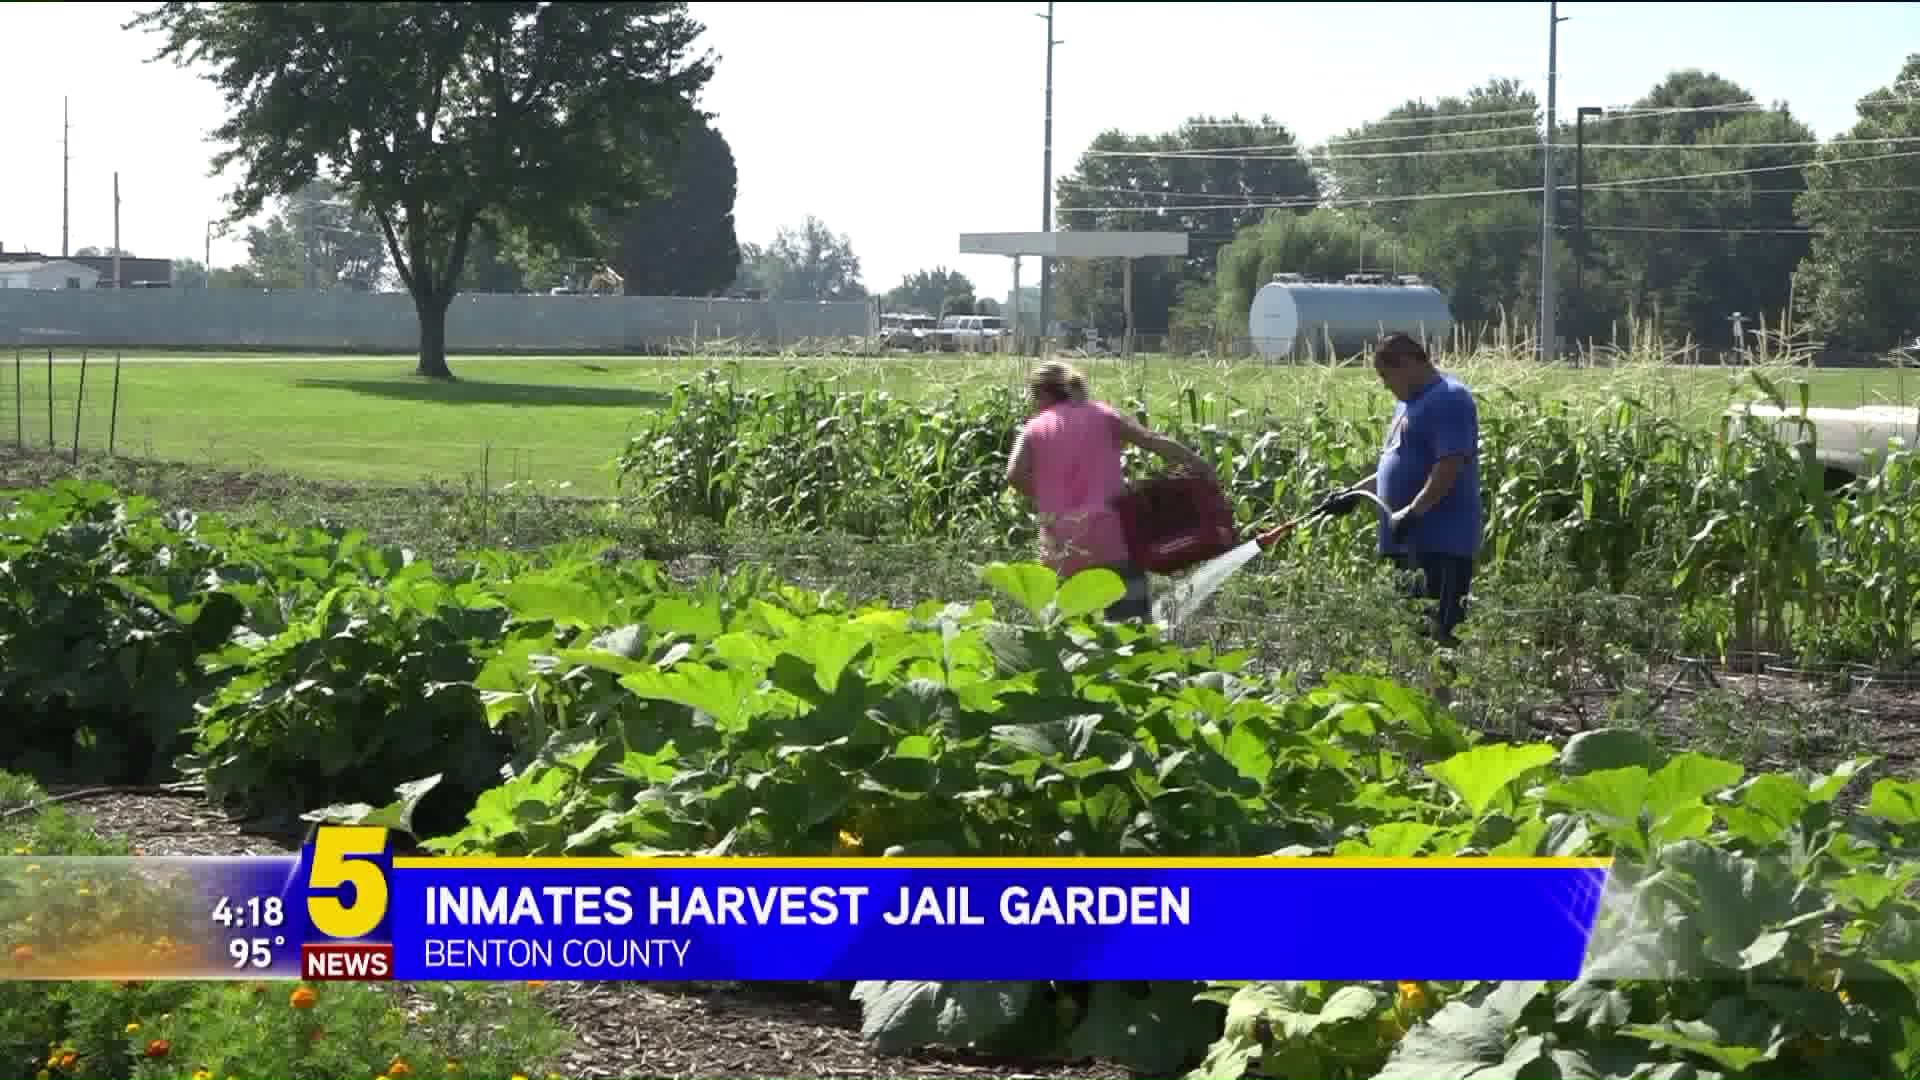 Inmates Harvest Jail Garden